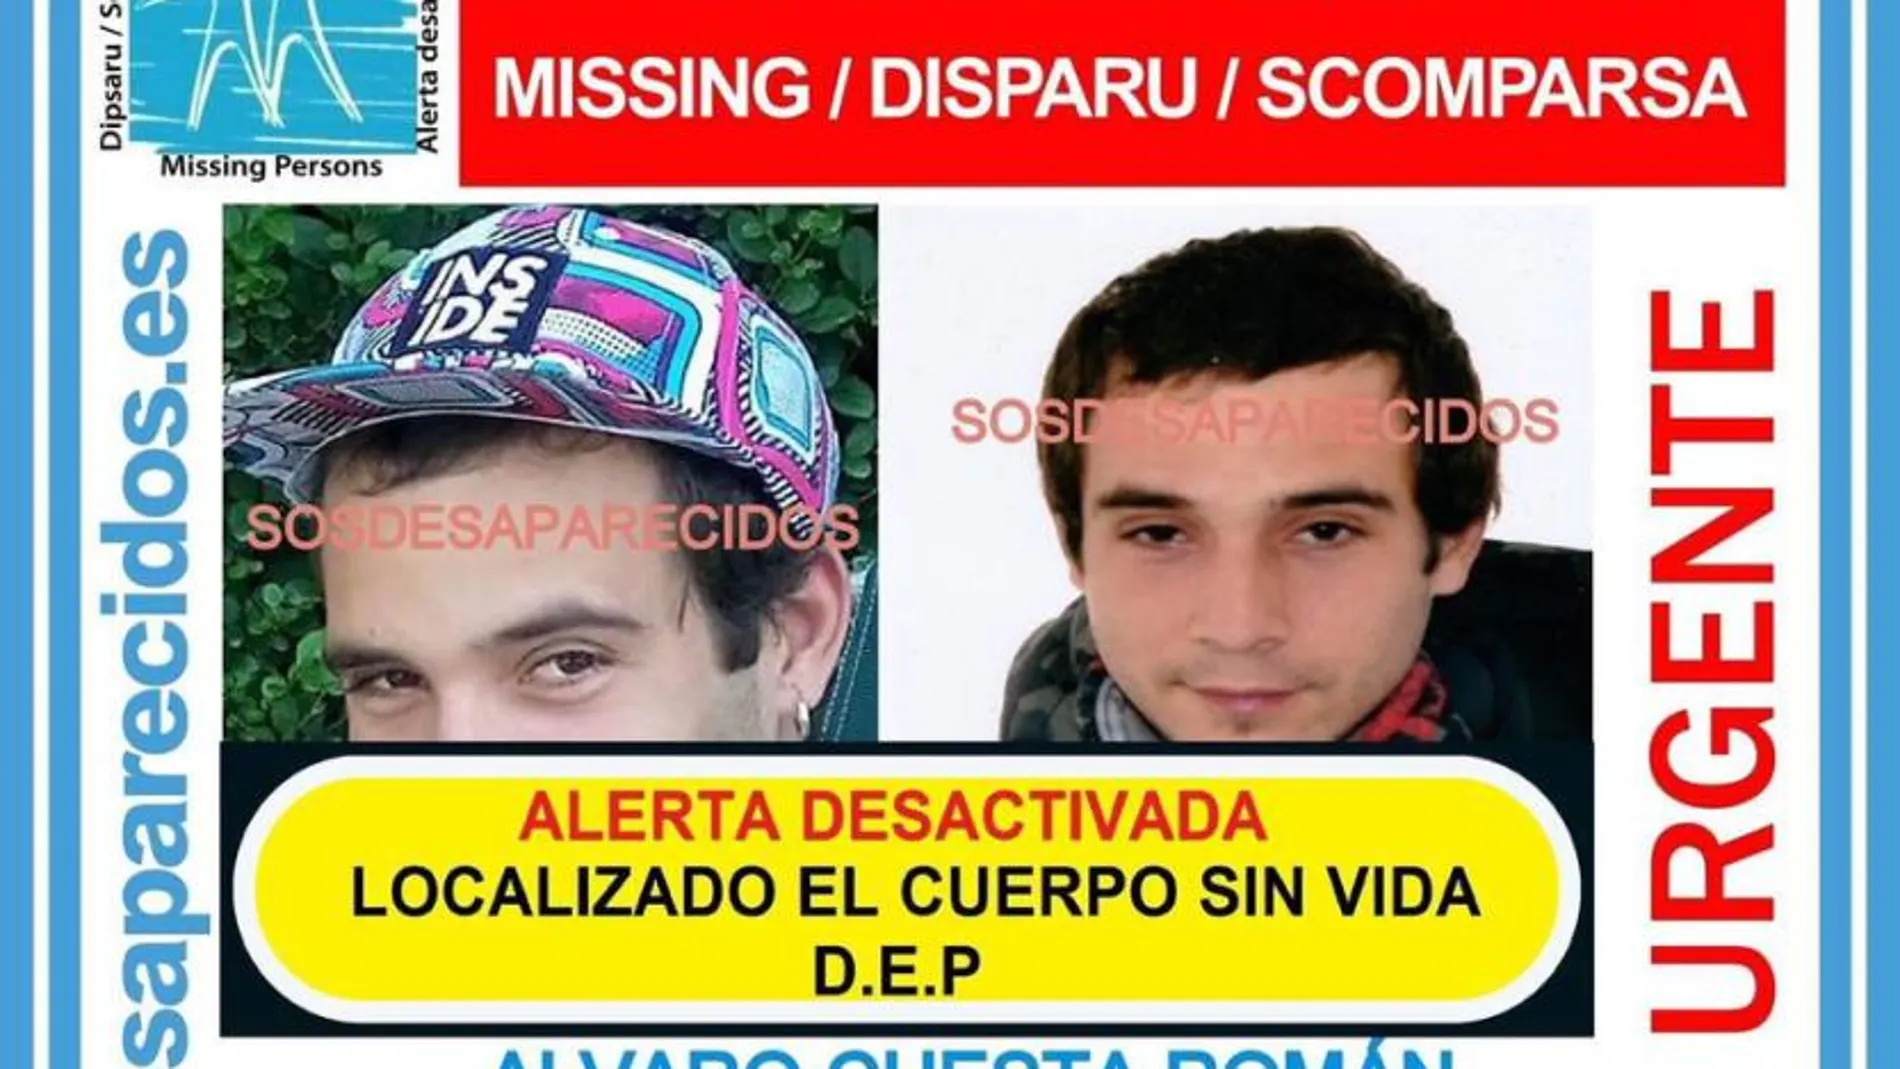 Localizado el cuerpo sin vida del joven desaparecido en Collado Villalba